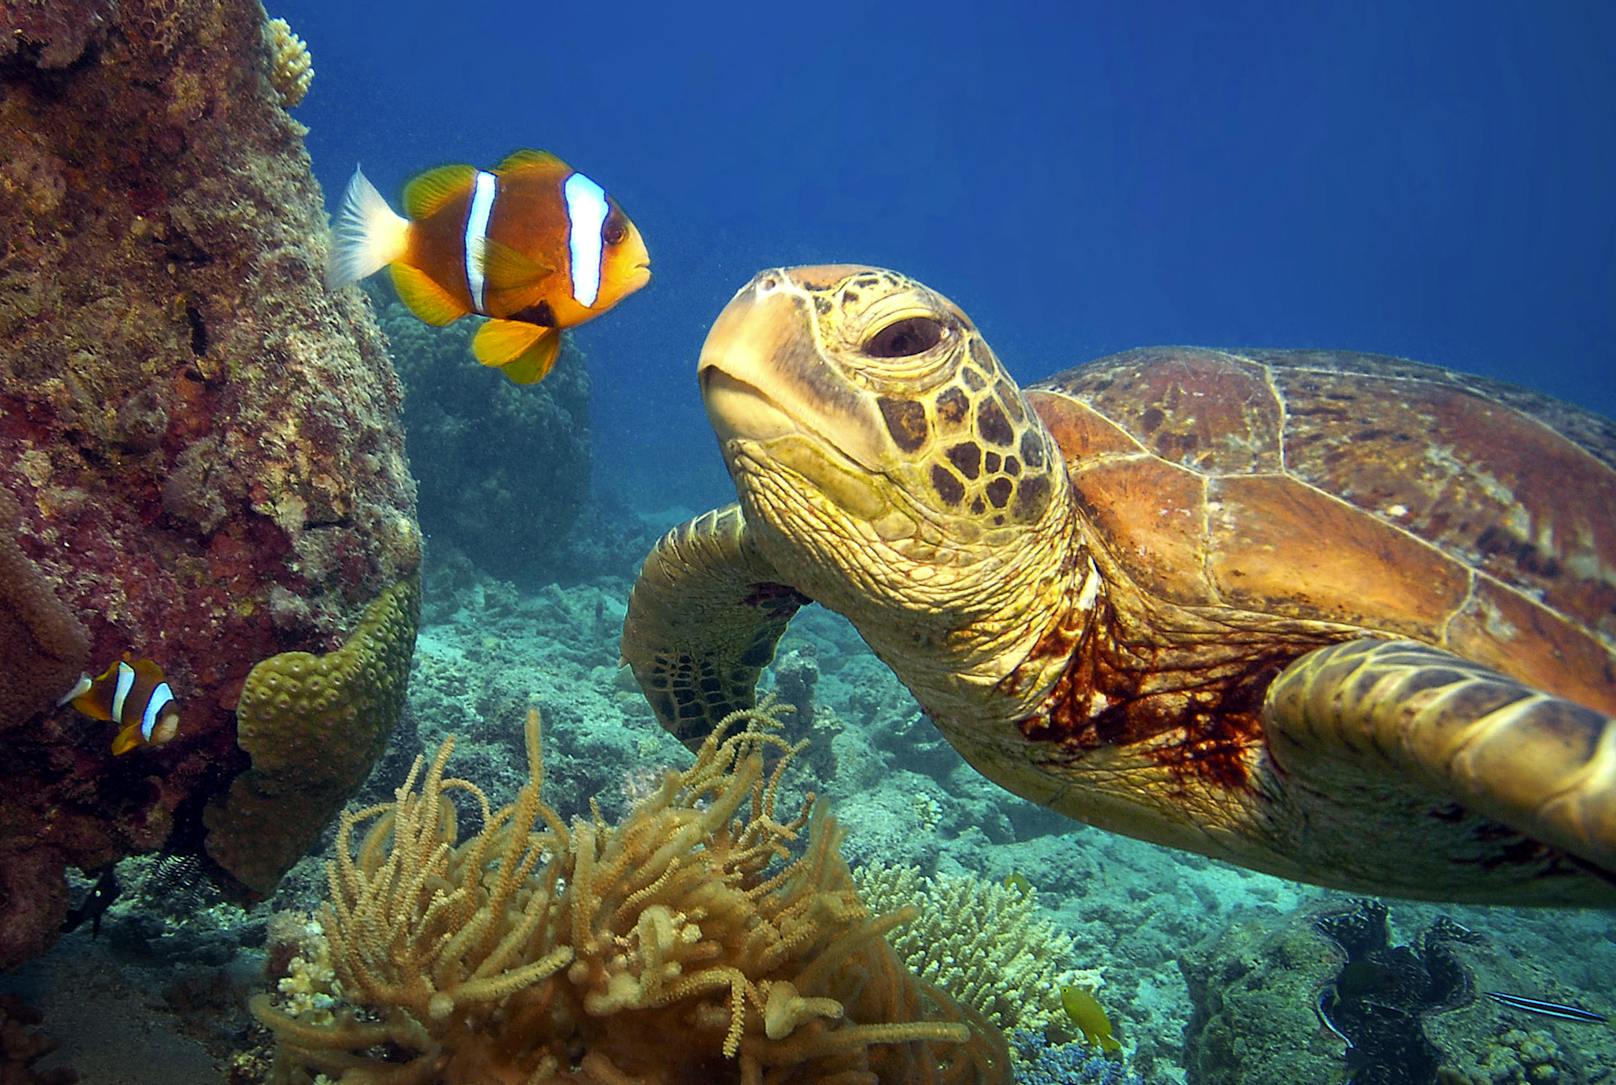 Grüne Meeresschildkröte und ein Clownfisch namens Nemo?&nbsp;Meeresschildkröten sind stark vom Aussterben bedroht.&nbsp;Weltweit gibt es sieben Meeresschildkrötenarten.&nbsp;Sie leben in tropischen und subtropischen Meeren. Die Weibchen kommen nur an Land, um an Stränden ihre Eier abzulegen.&nbsp;